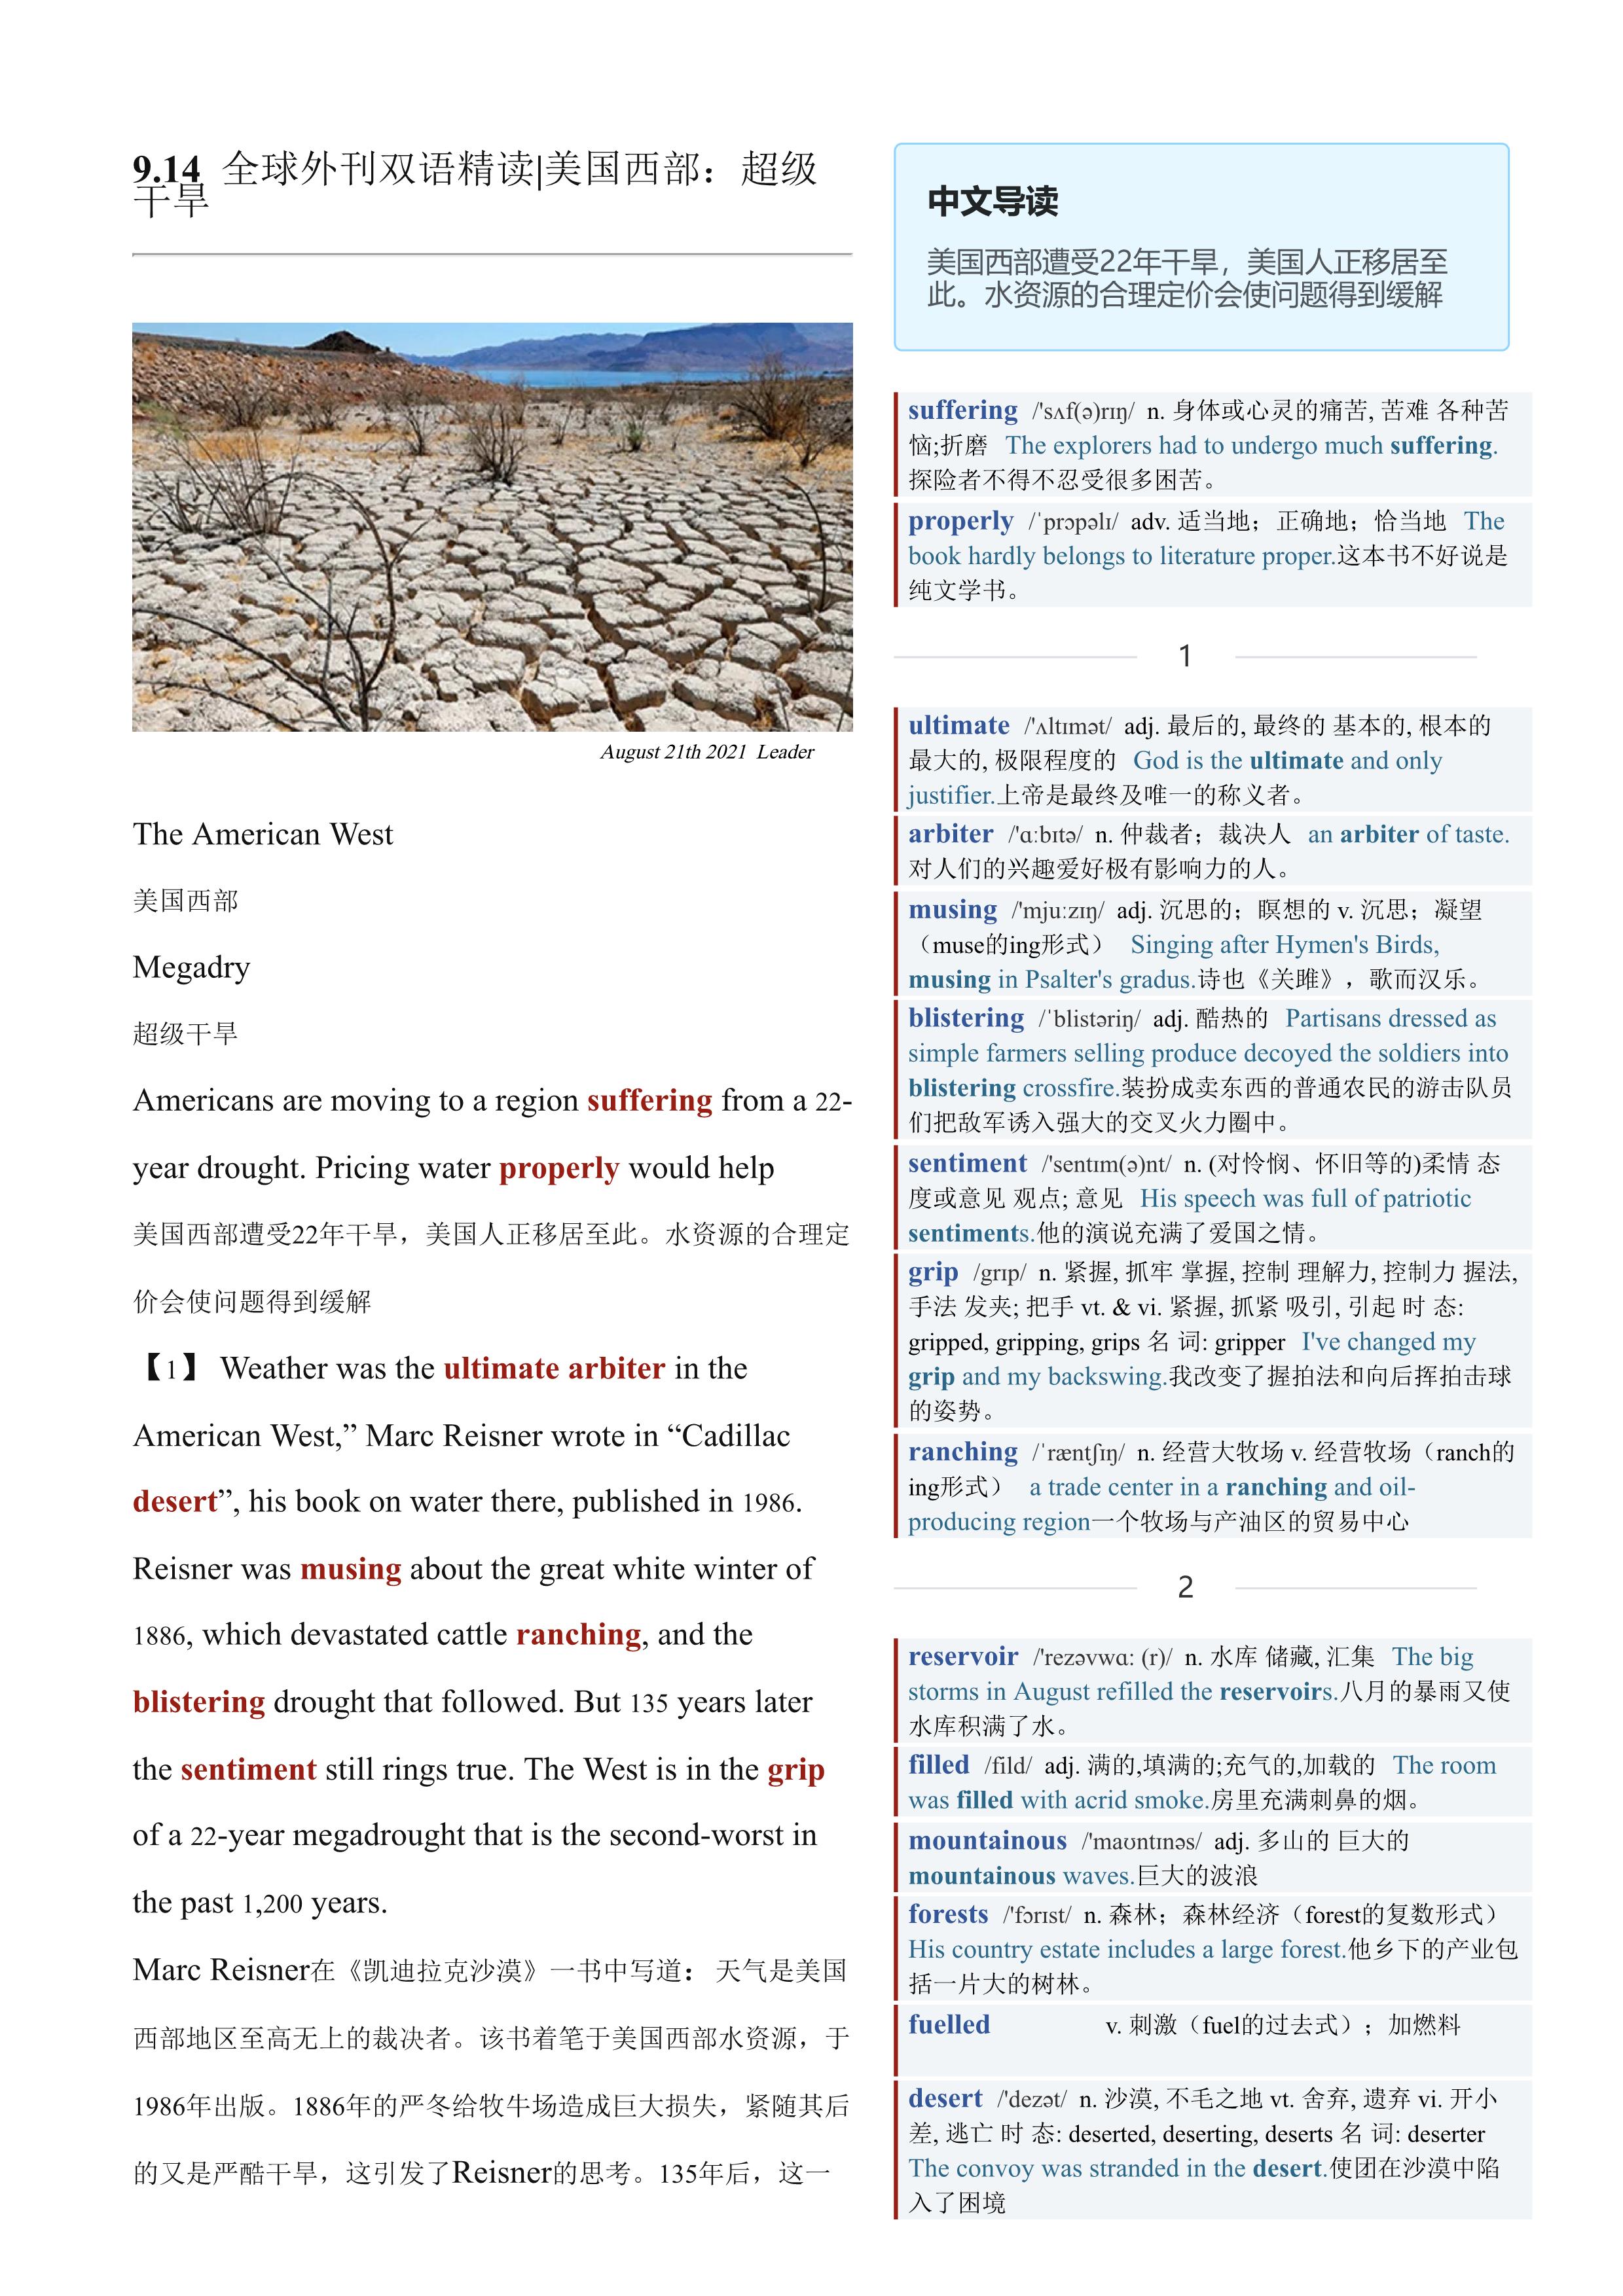 2021.09.14 经济学人双语精读丨美国西部：超级干旱 (.PDF/DOC/MP3)